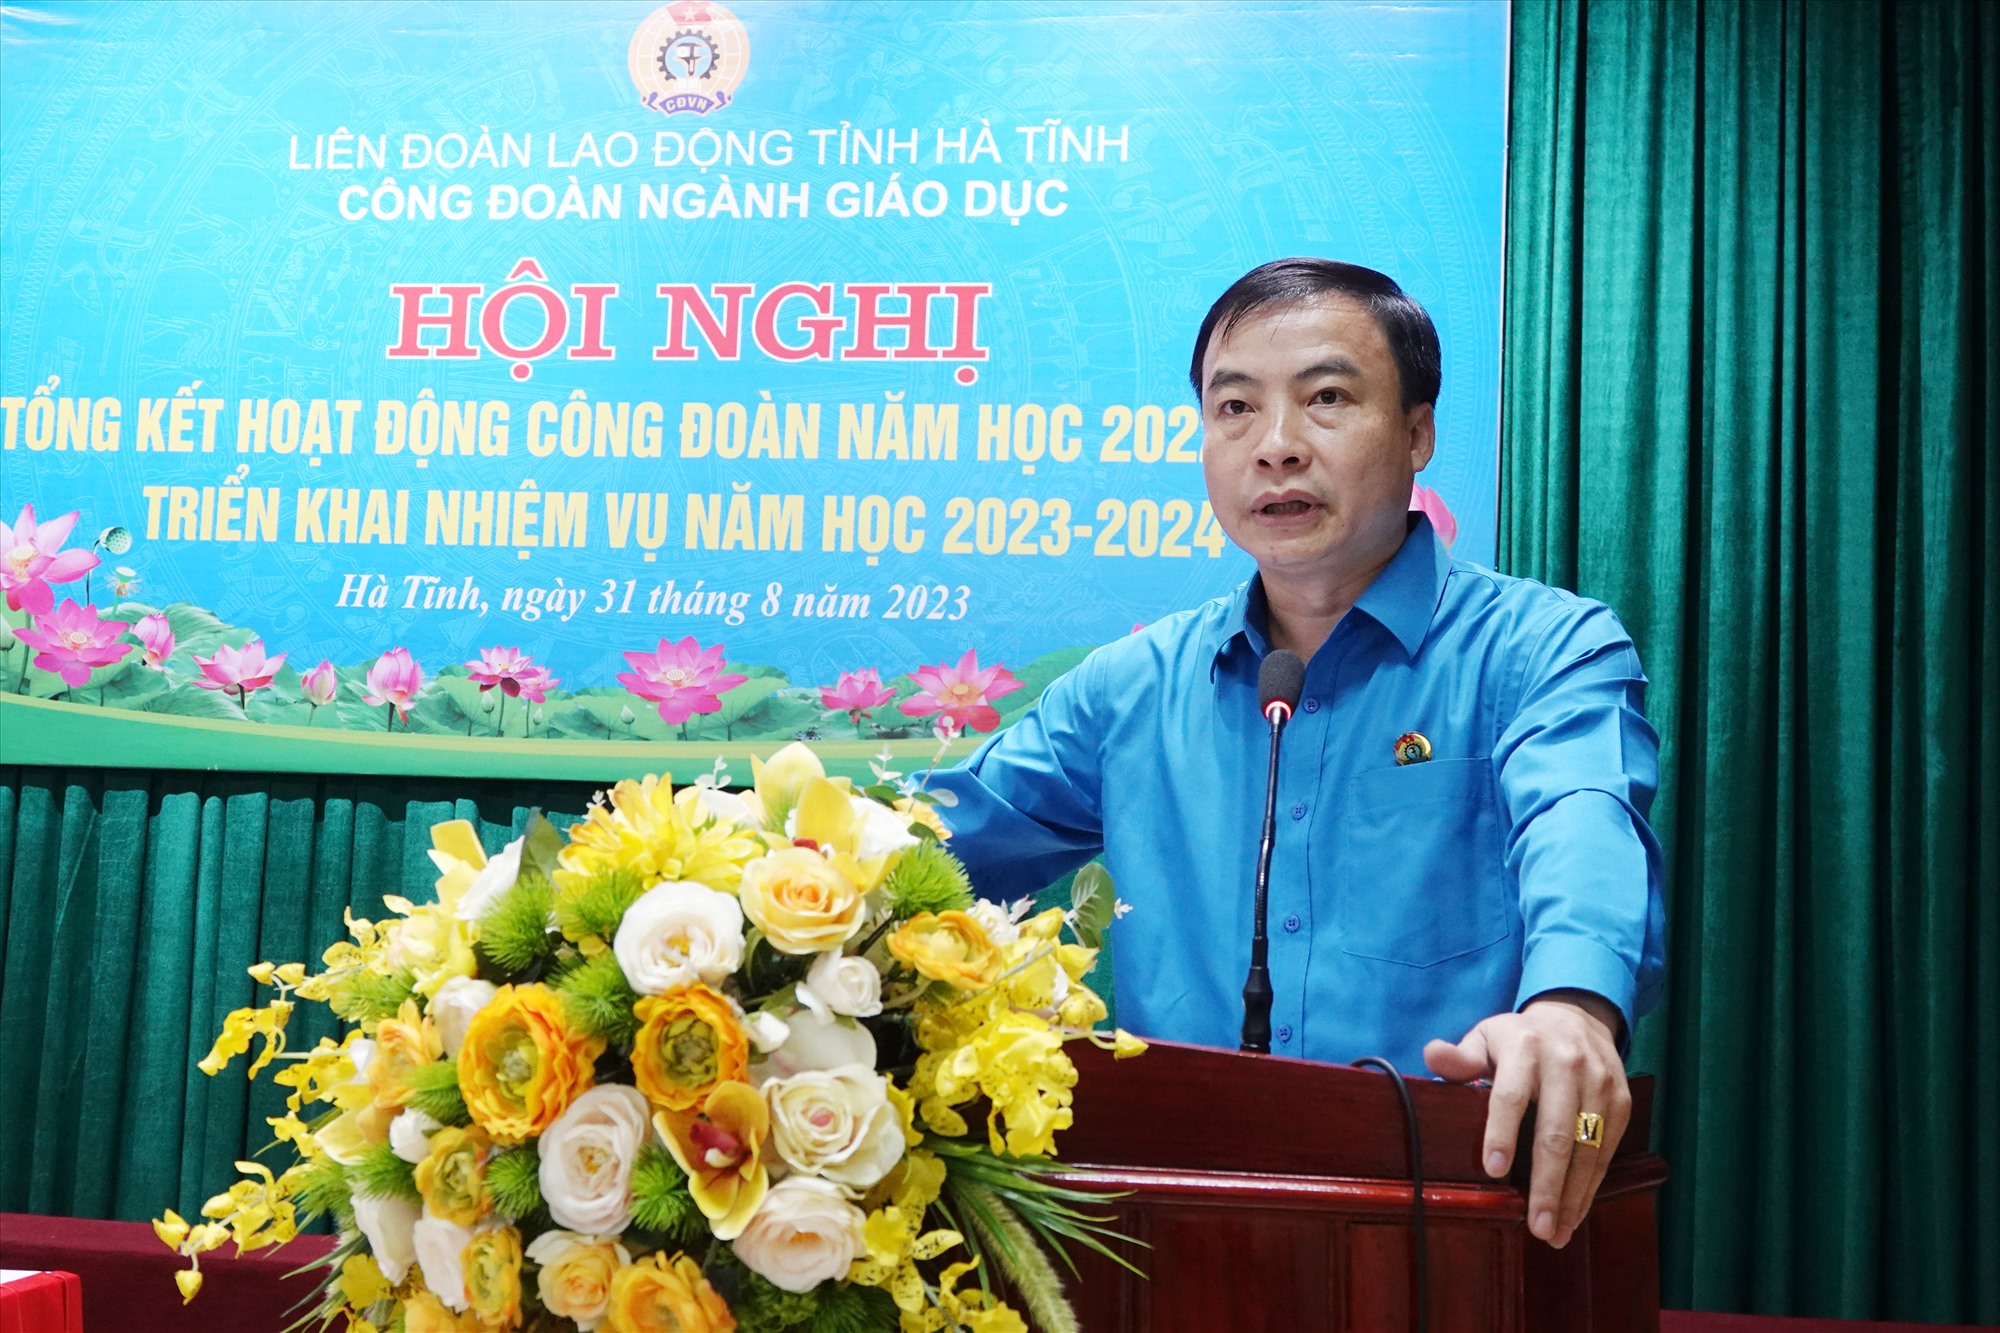 Ông Trần Hậu Tú - Chủ tịch Công đoàn ngành Giáo dục Hà Tĩnh phát biểu tại hội nghị. Ảnh: Trần Tuấn.